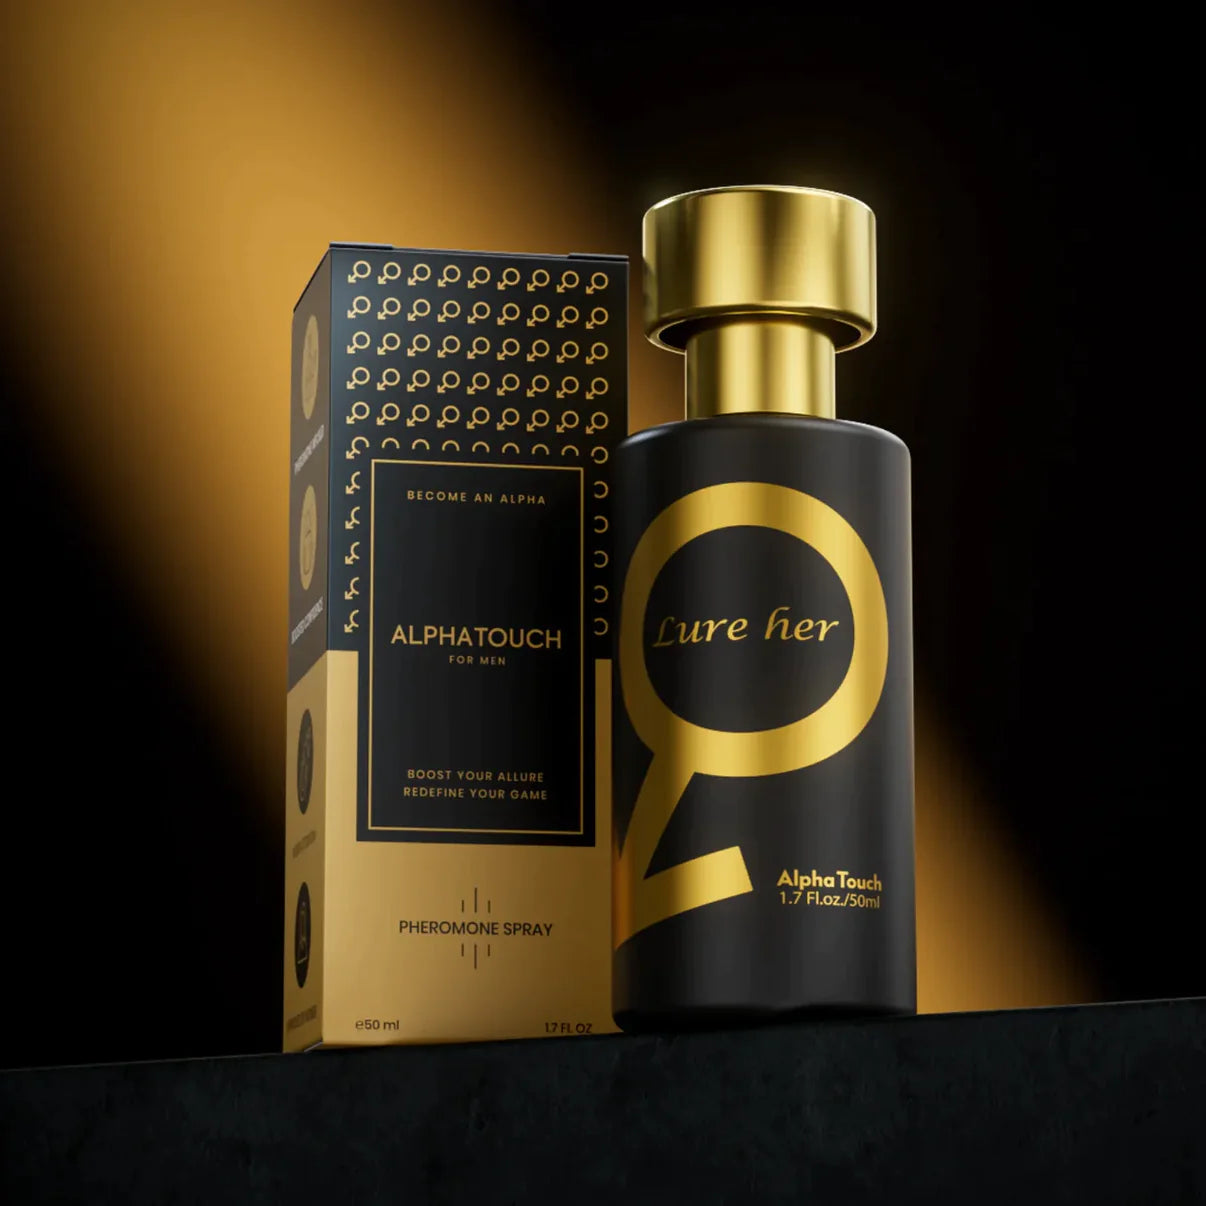 AlfaBlack® Perfume de Feromonas 50ml | Edición Premium